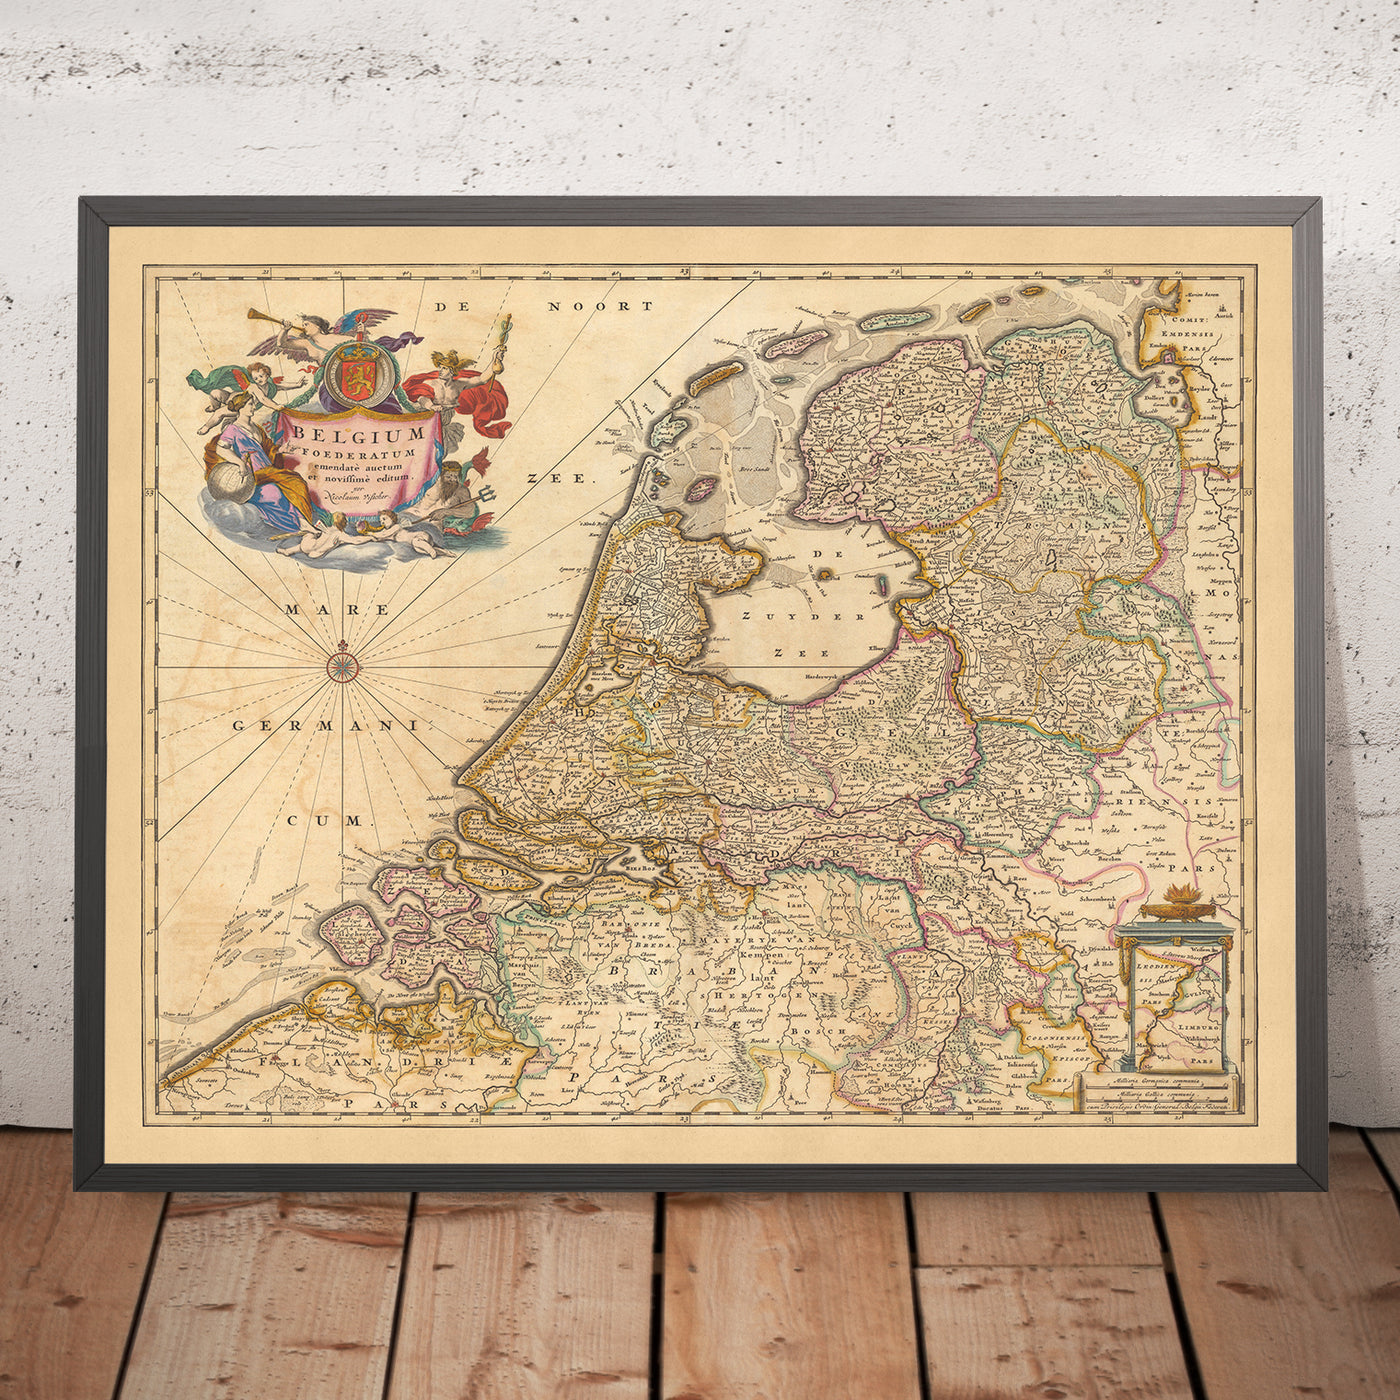 Old Map of Federated Belgium by Visscher, 1690: Amsterdam, Rotterdam, Antwerp, Düsseldorf, Ghent